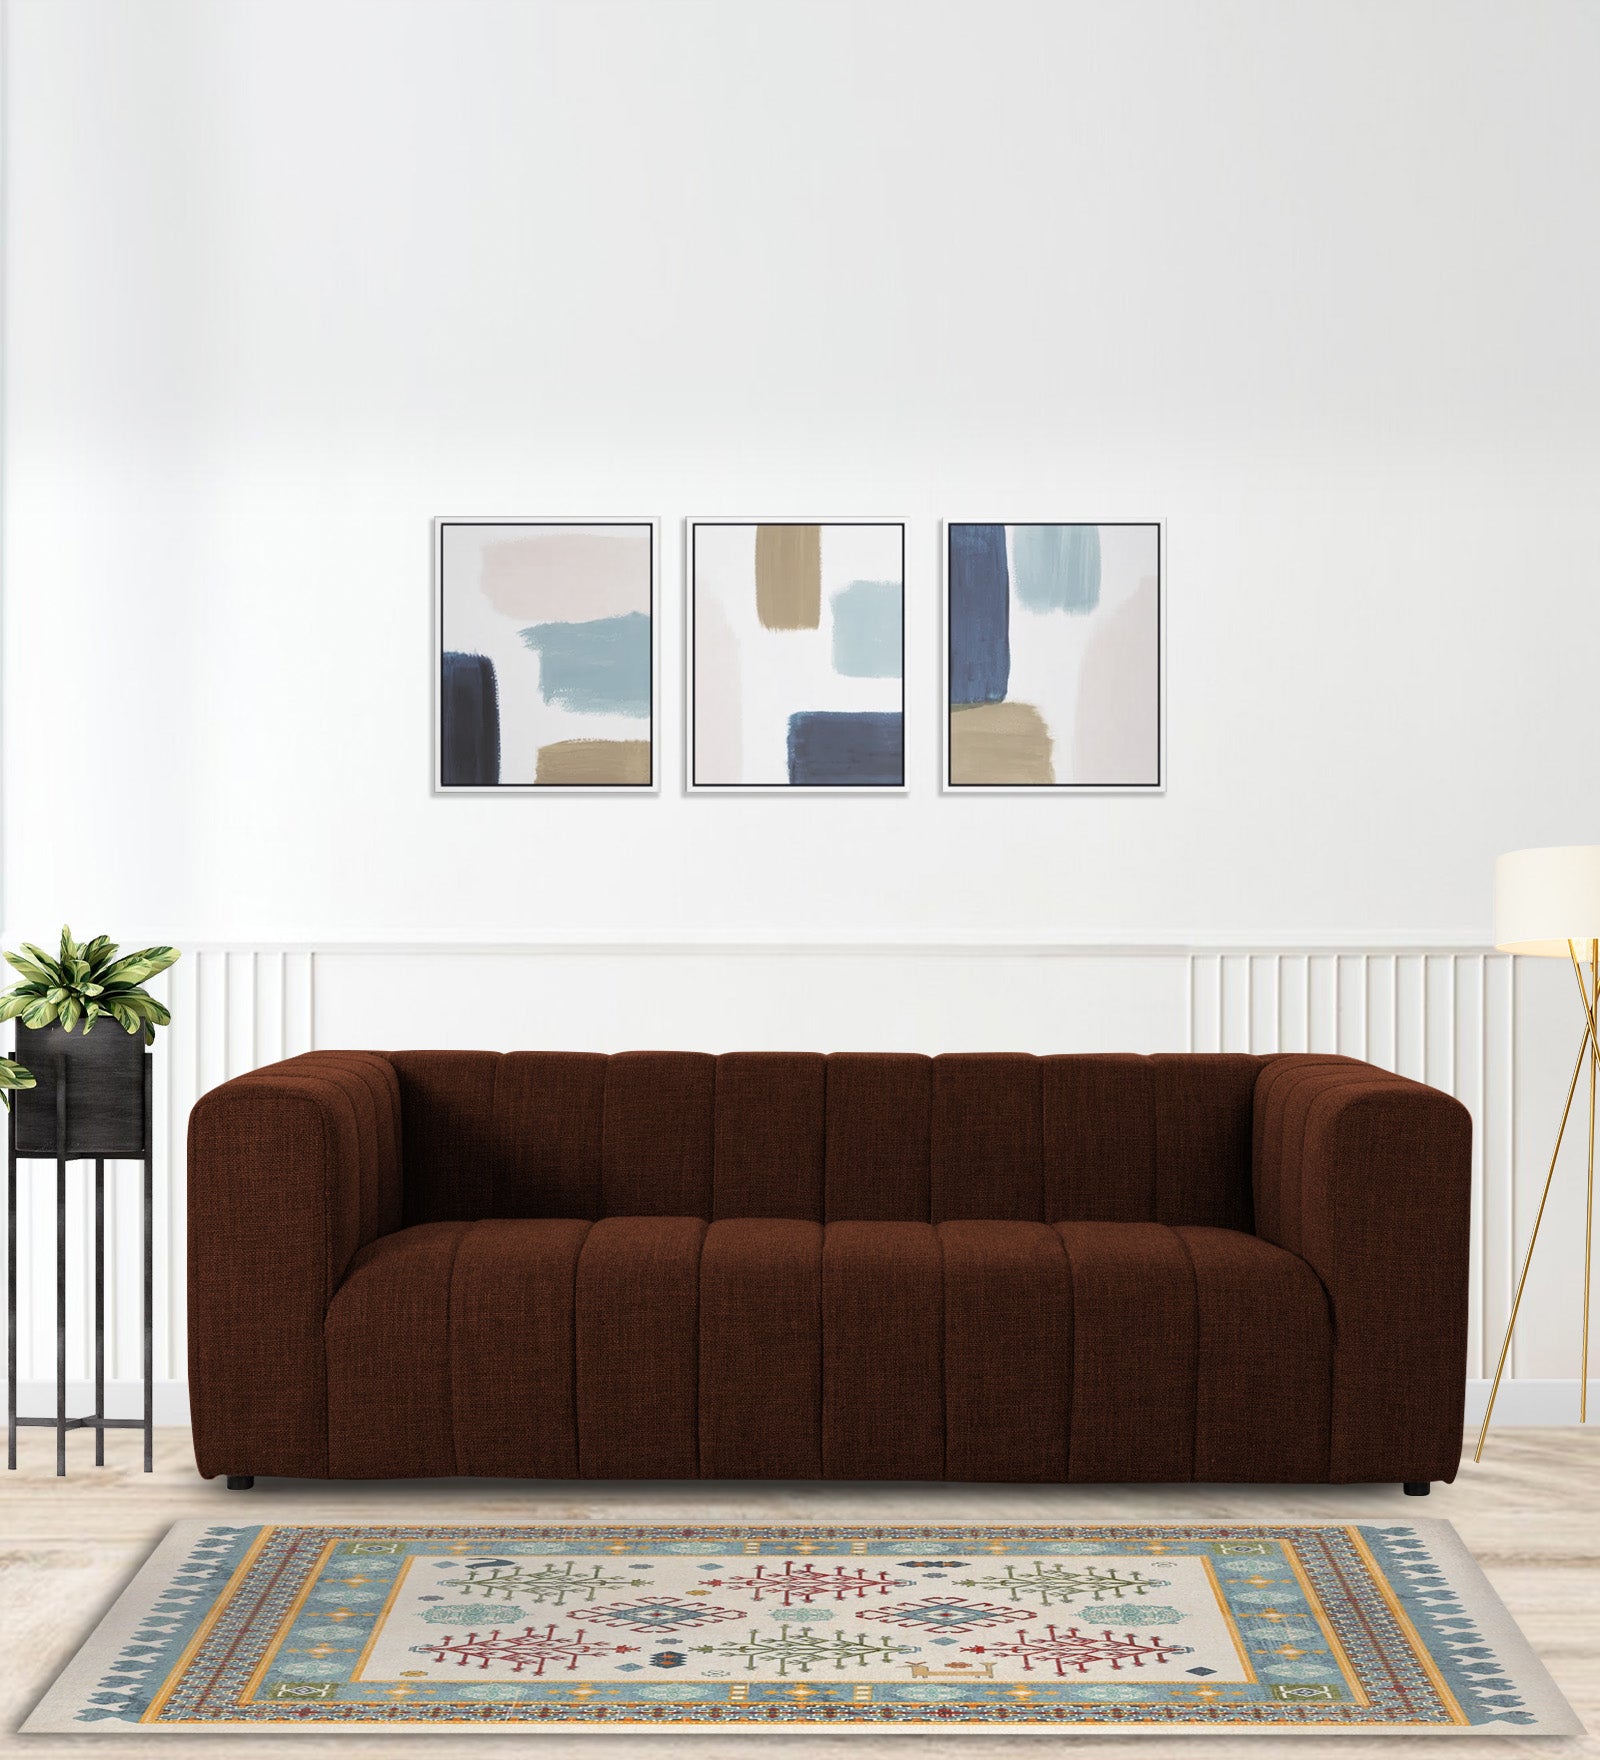 Lara Fabric 3 Seater Sofa in Coffee Brown Colour